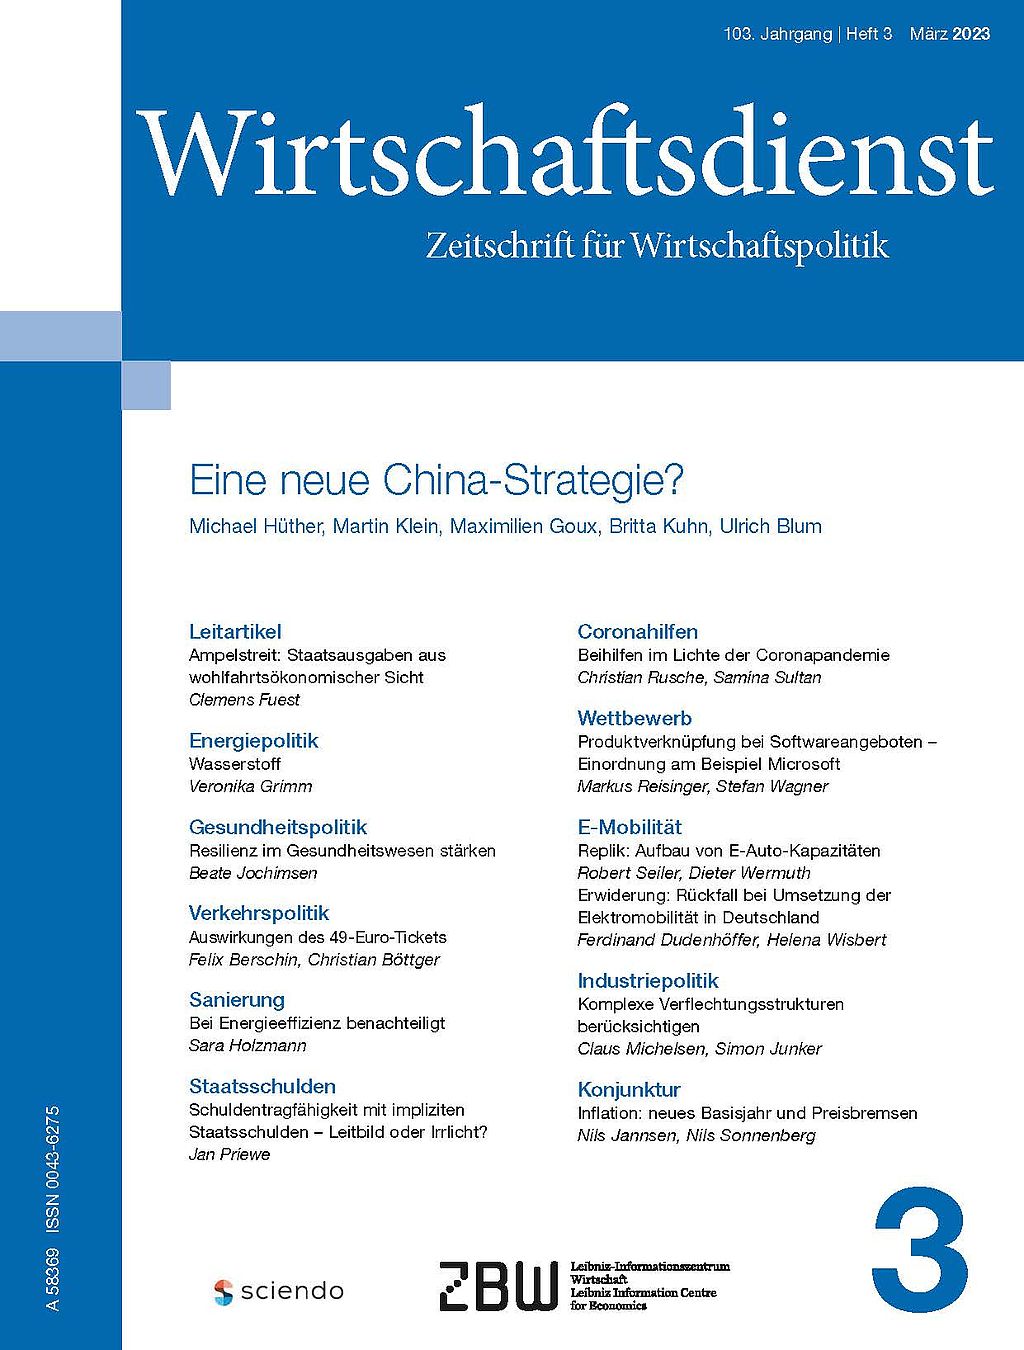 cover_wirtschaftsdienst-2023-03.jpg